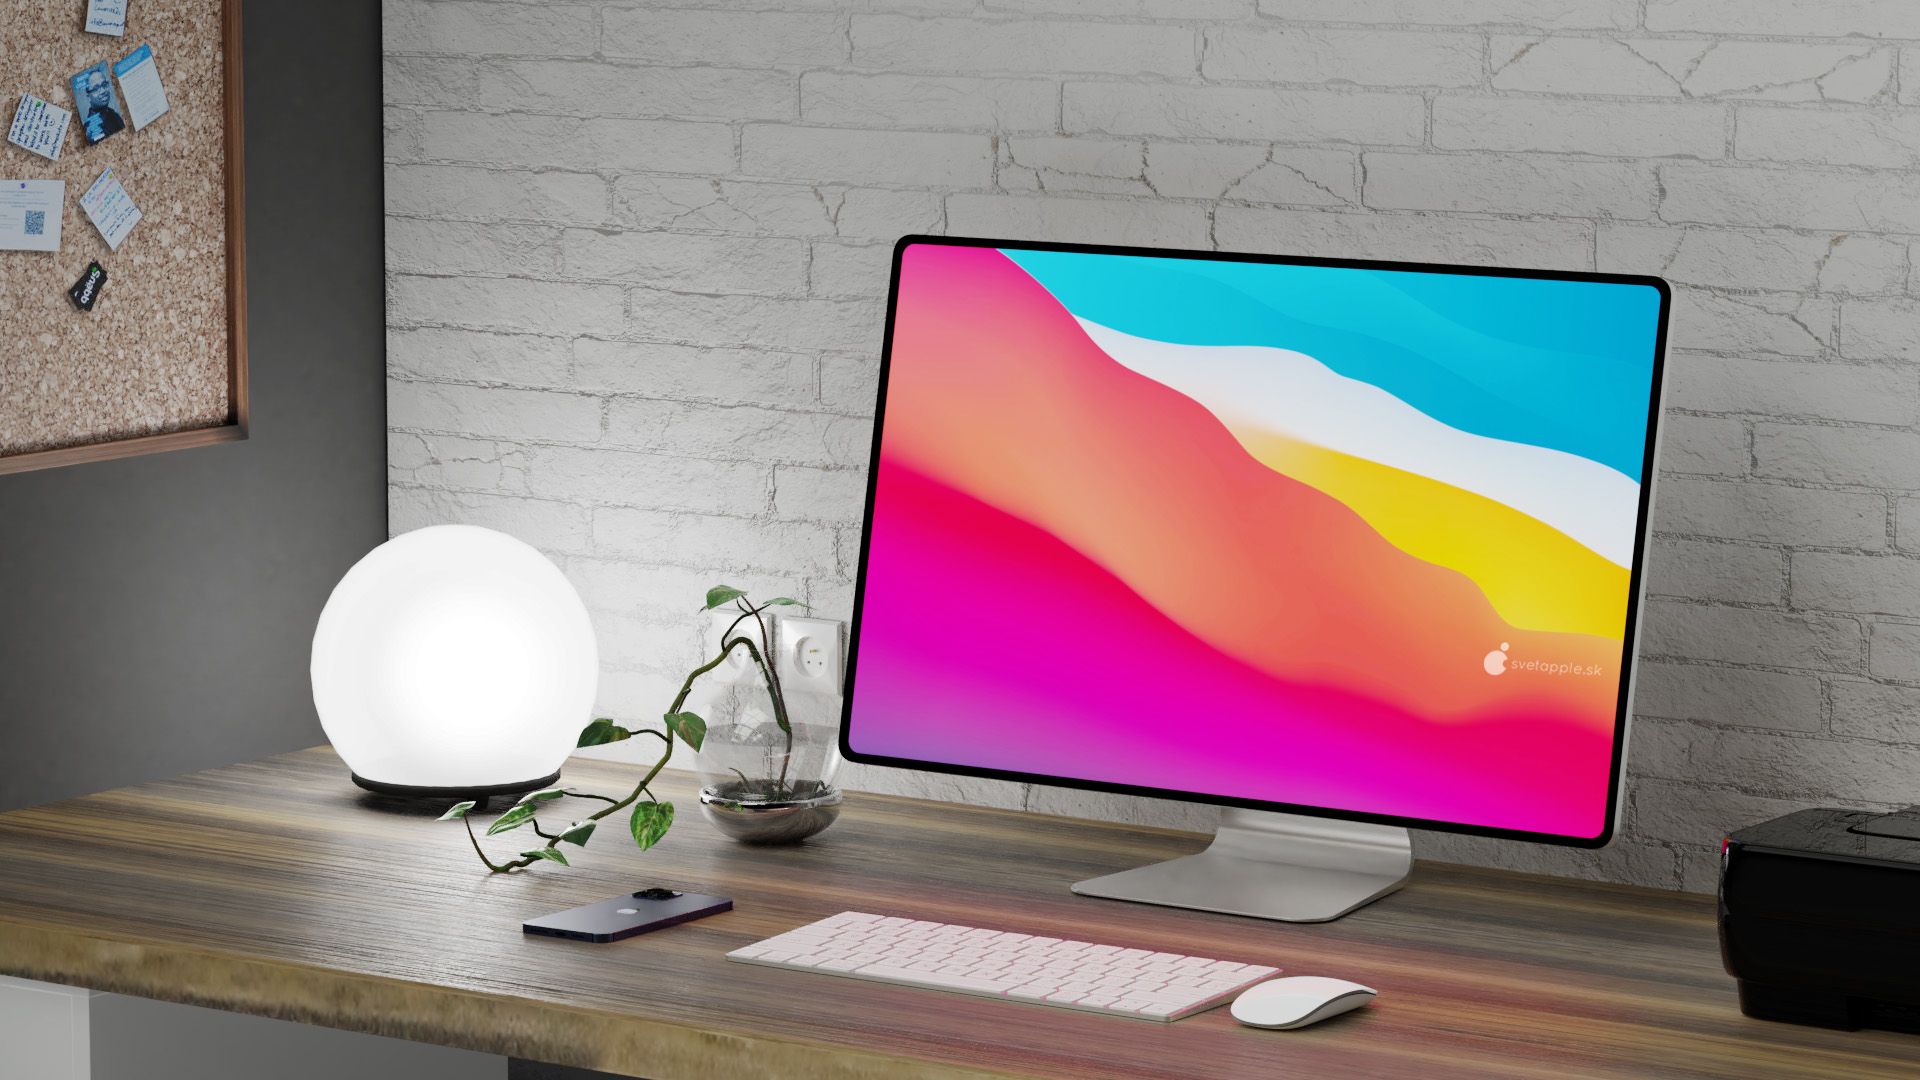 Обновлённый 27-дюймовый iMac будет оснащён ЖК-дисплеем. Никакого mini-LED не будет